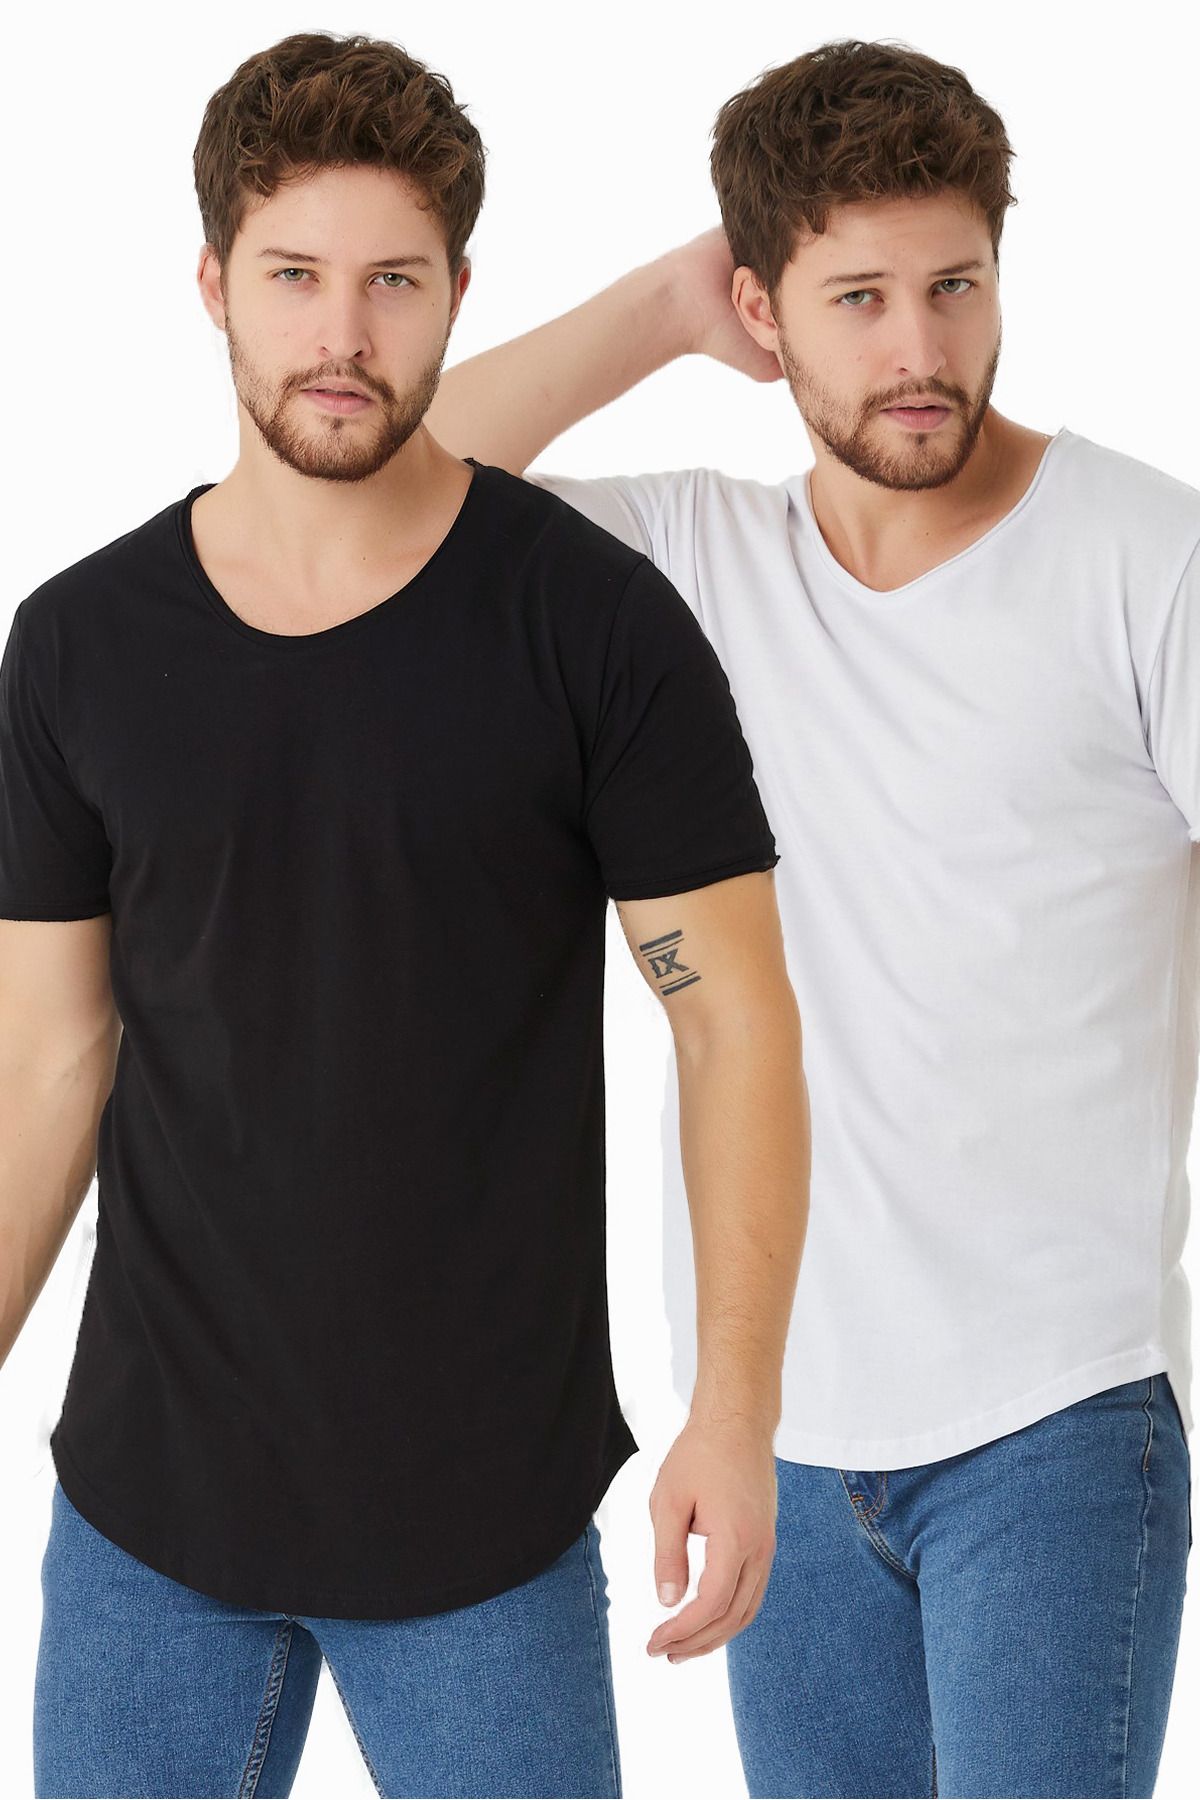 Tarz Cool Erkek Siyah-beyaz Pis Yaka Salaş T-shirt-ikilitcpsr01s